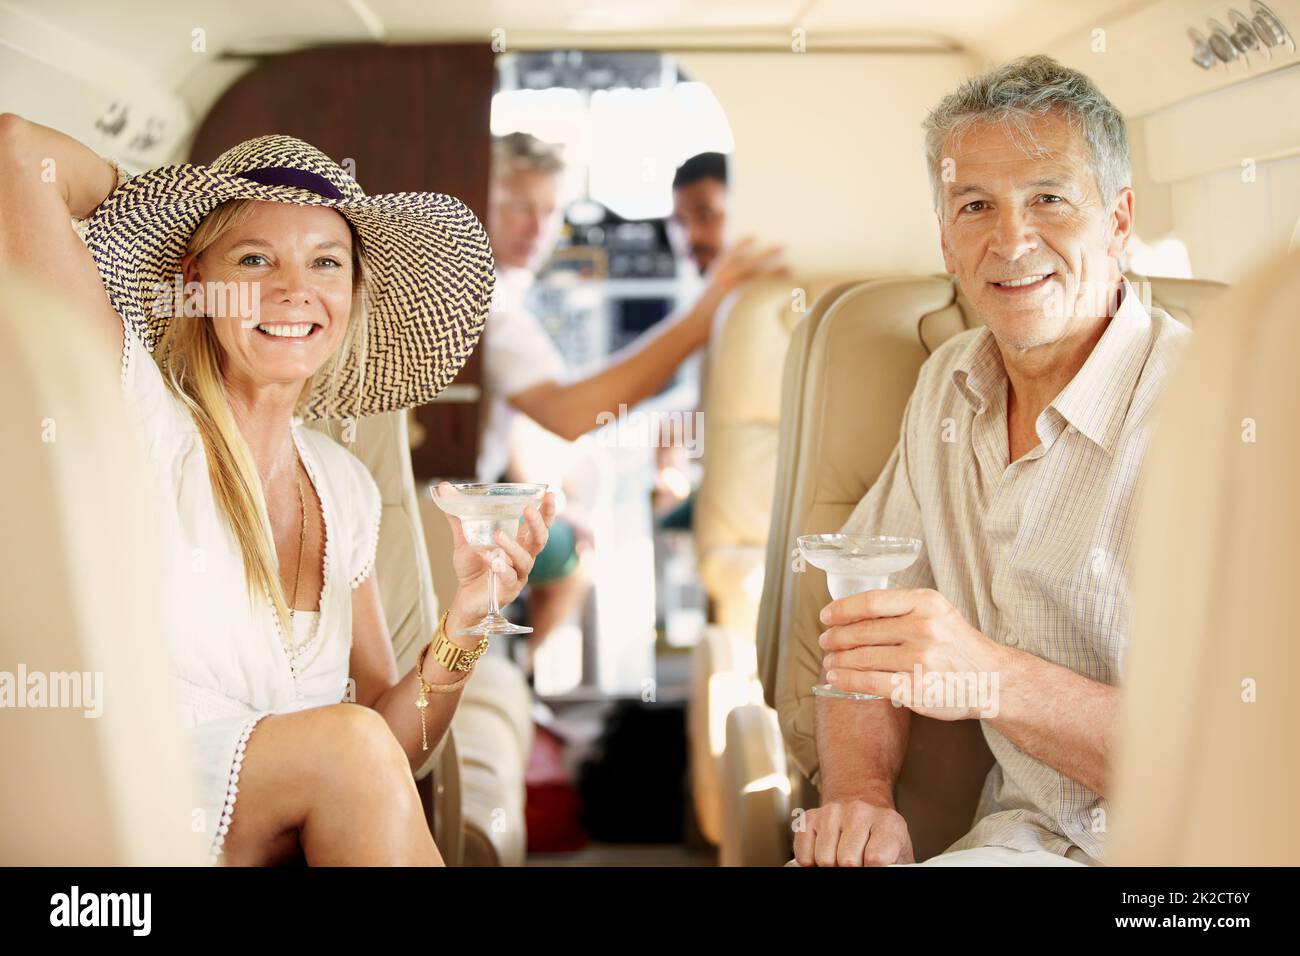 Volare con stile. Shot di una coppia matura seduta sul retro di un jet cocktail privato. Foto Stock